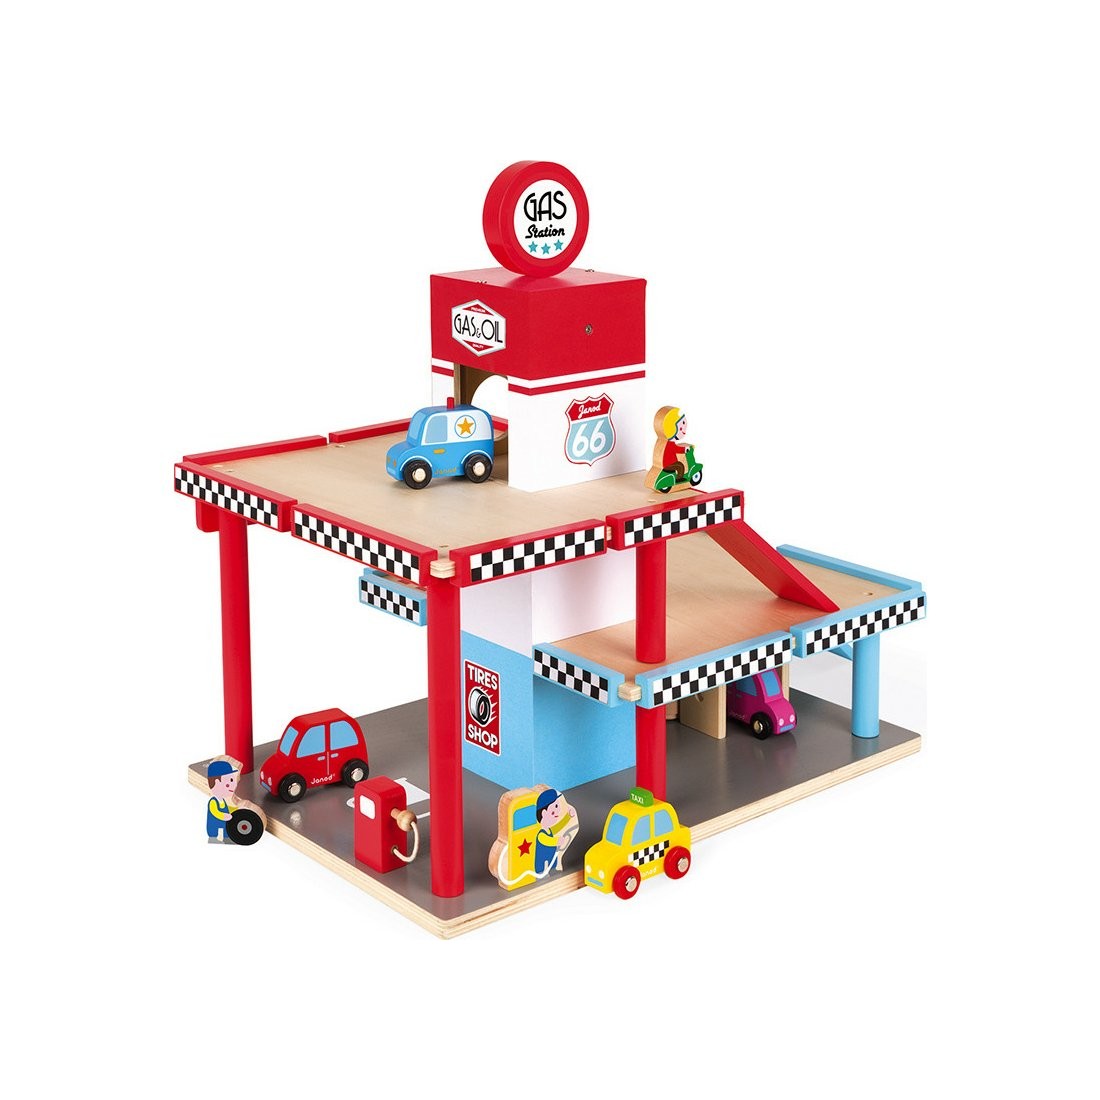 Garage Janod et ses 6 accessoires - jouet en bois - la fée du jouet